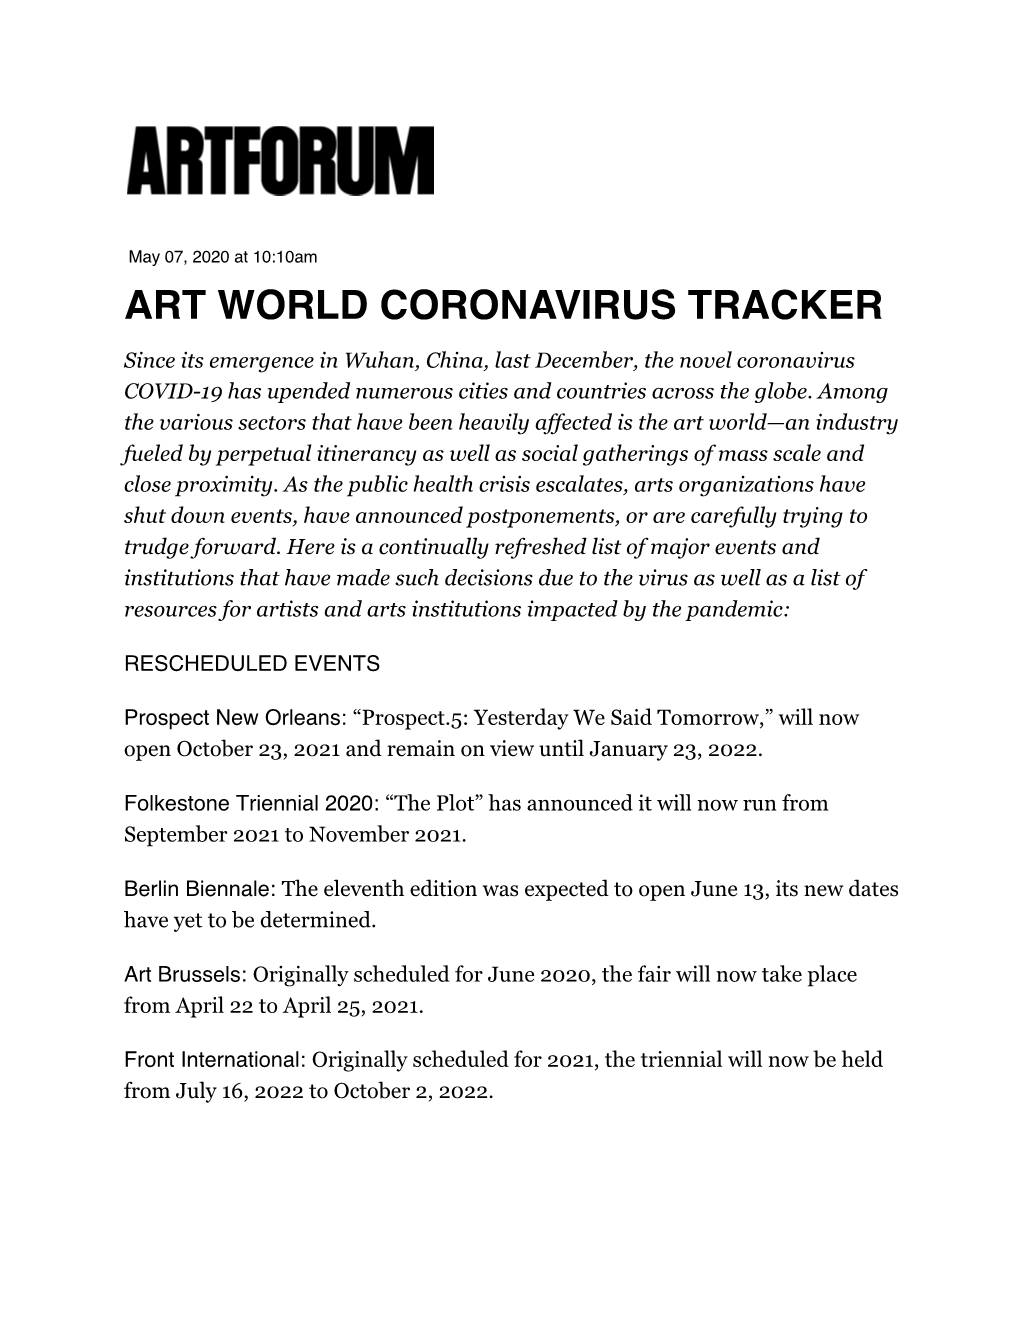 Art World Coronavirus Tracker